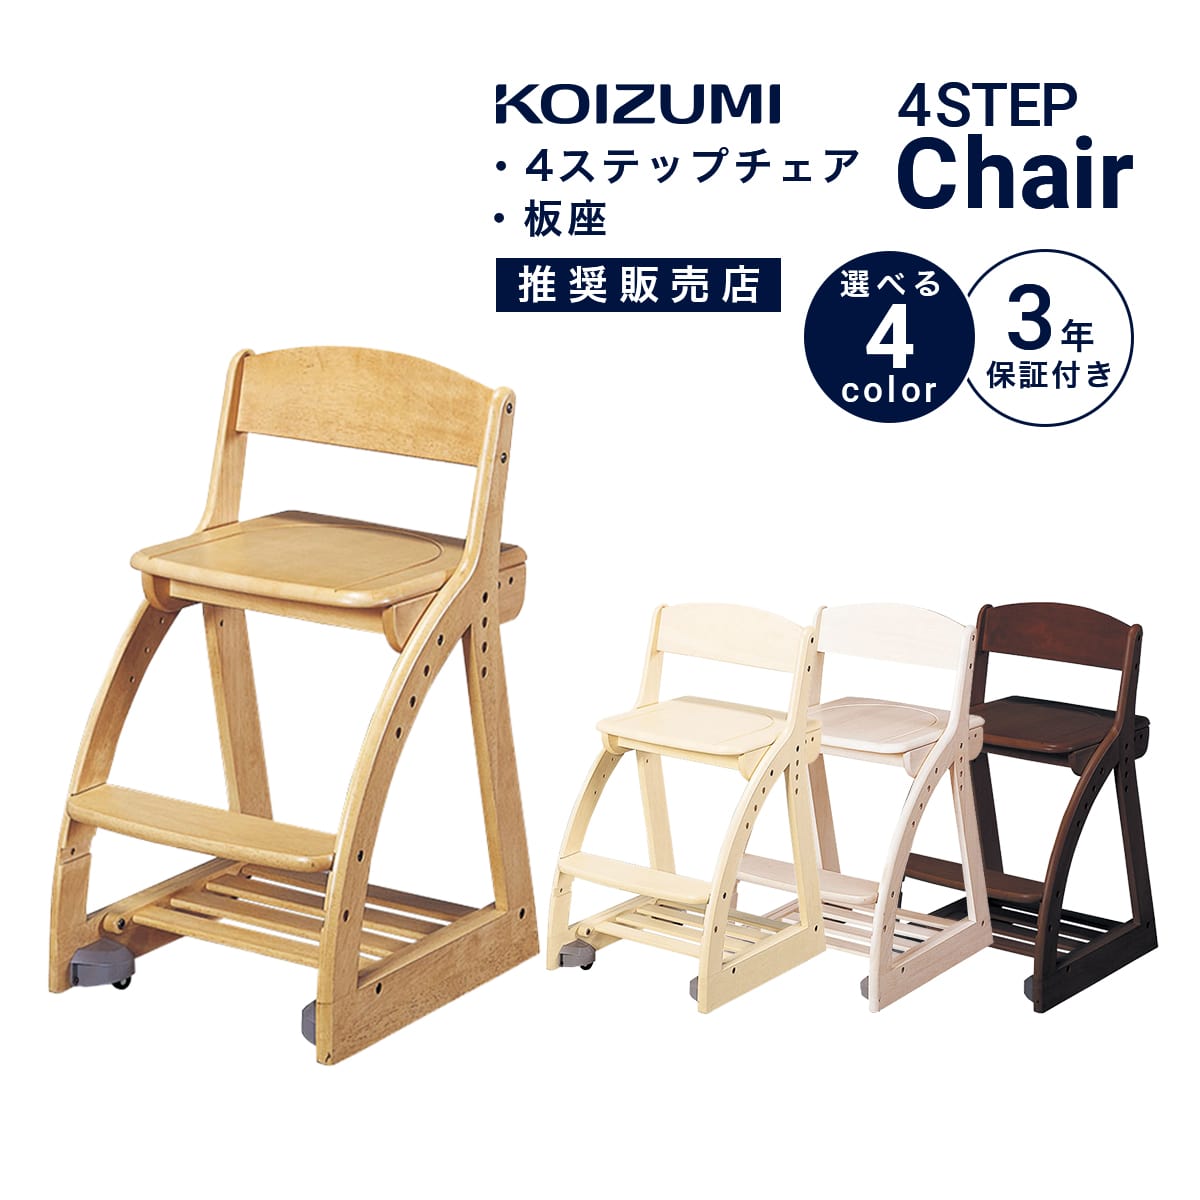  学習椅子 KOIZUMI 姿勢 学習イス コイズミ 子供 木製椅子 キッズチェア デスクチェア 4ステップチェア 板座 4ステップチェア 板座 ラバーウッド 高さ調節 スノコトレー 座面 スライド キャスター付き 幅41 「商：中」「才：4」